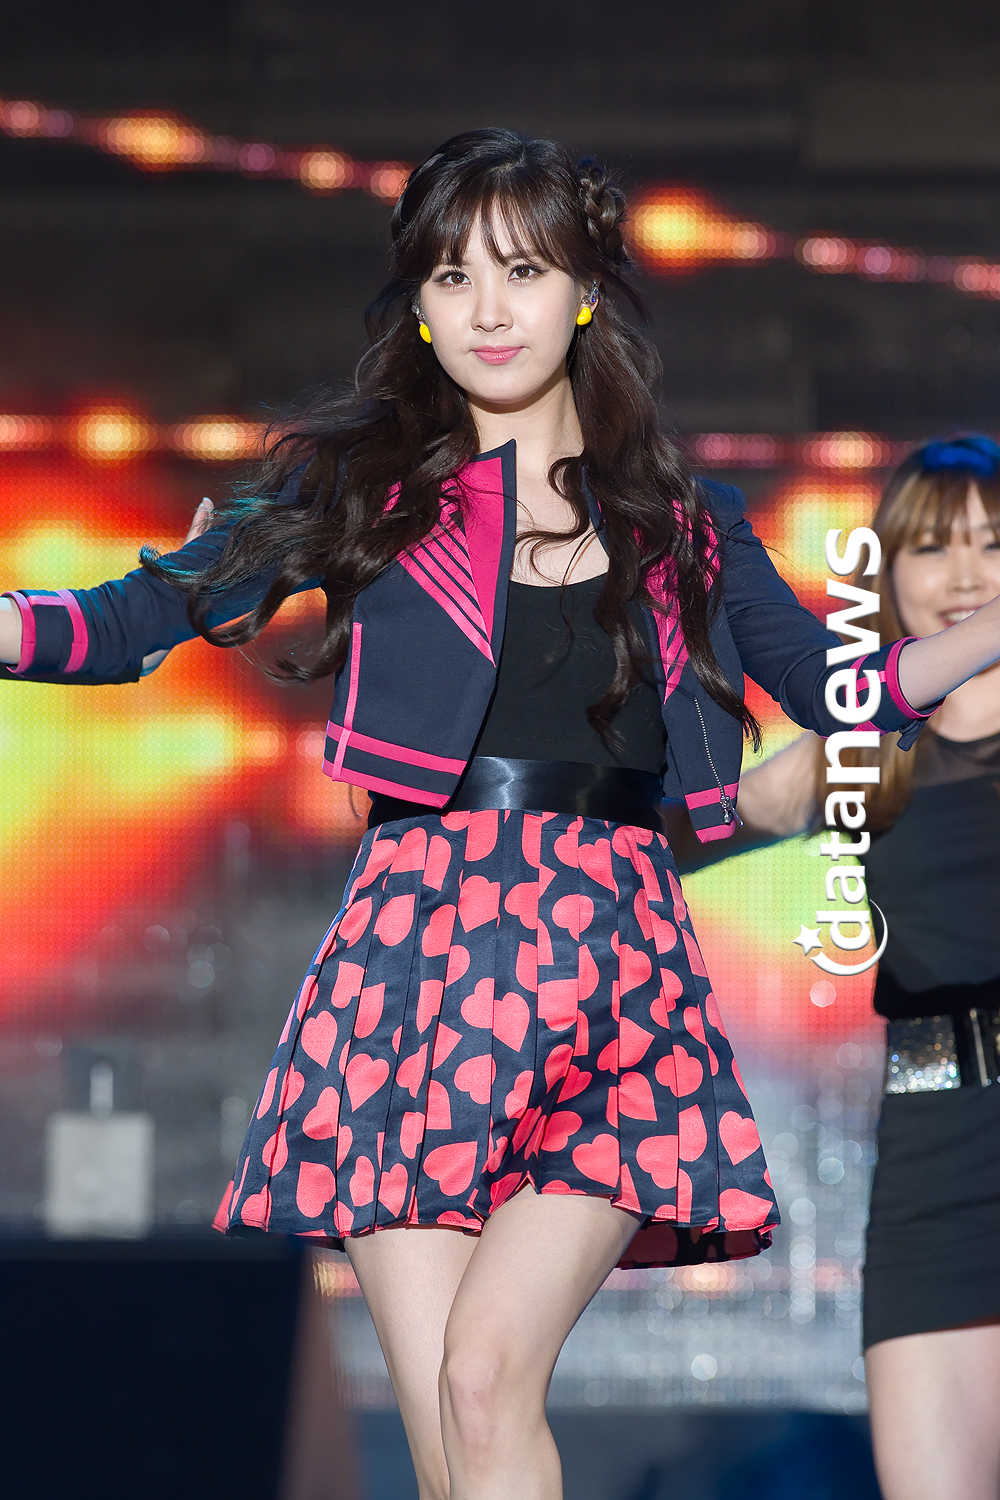 [PIC][30-05-2013]TaeTiSeo biểu diễn tại "PyeongTaek Concert" vào tối nay - Page 4 2559263D51AC2477023B73